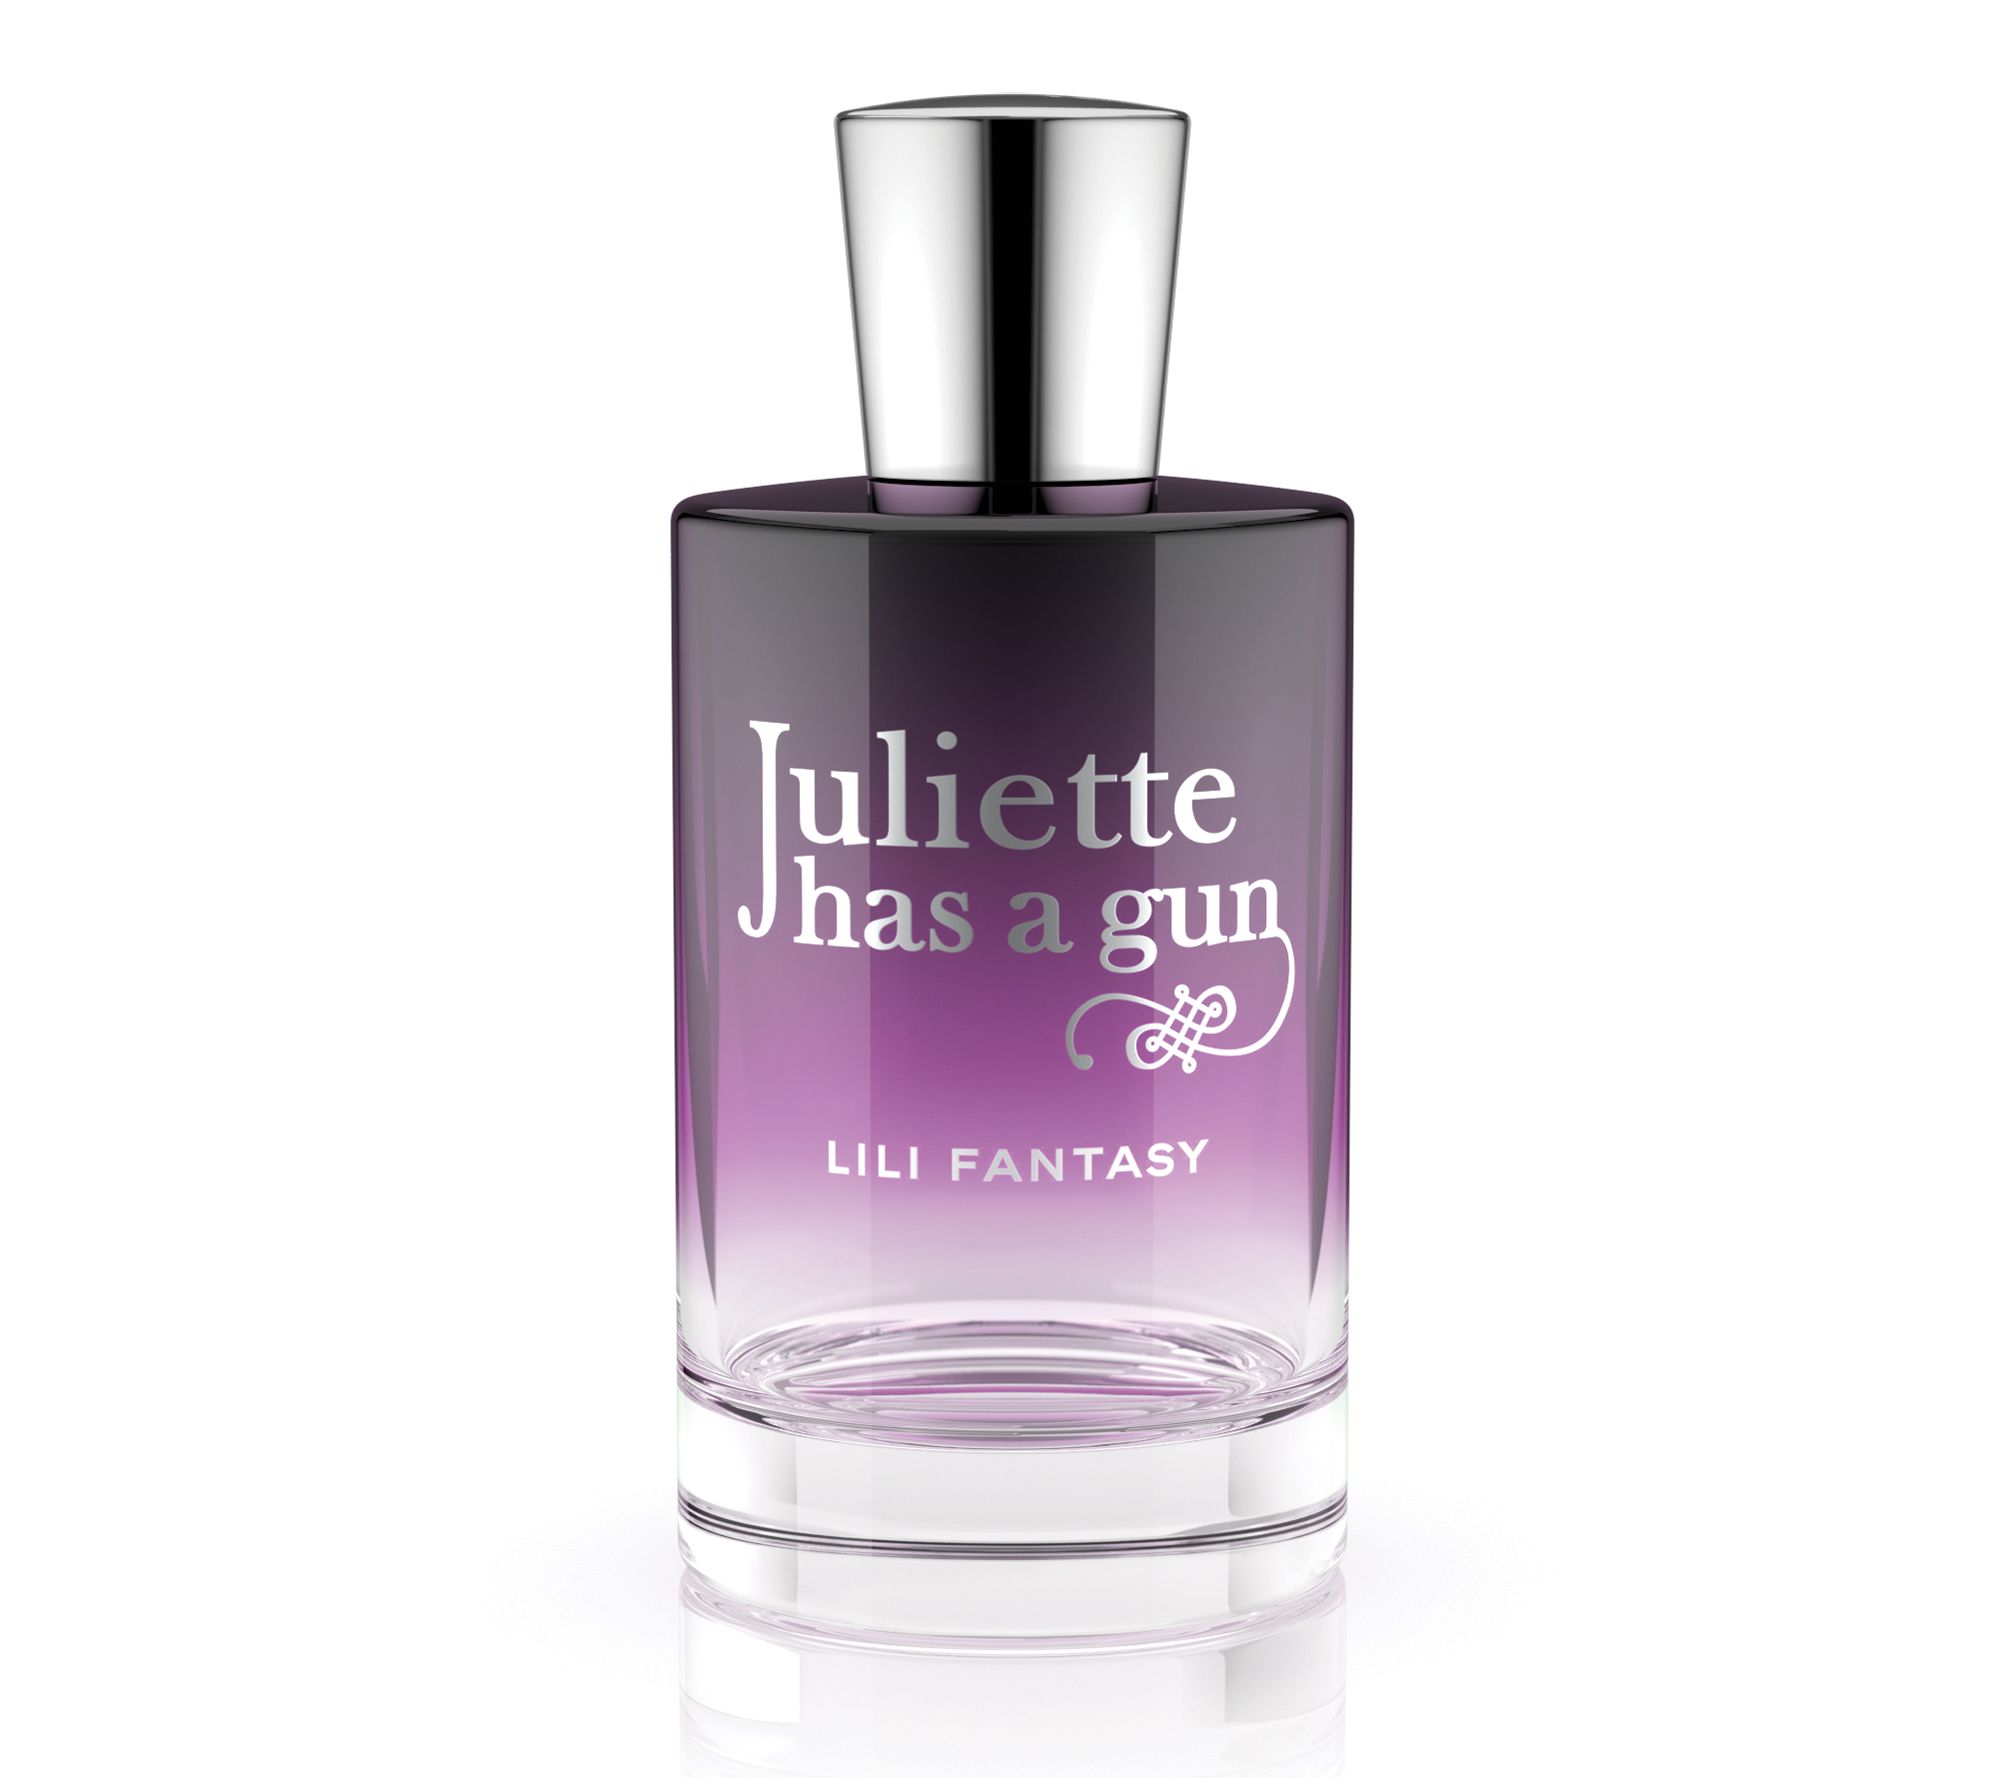  Juliette Has A Gun Lady Vengeance Eau de Parfum Spray, 3.3 Fl  Oz : Beauty & Personal Care